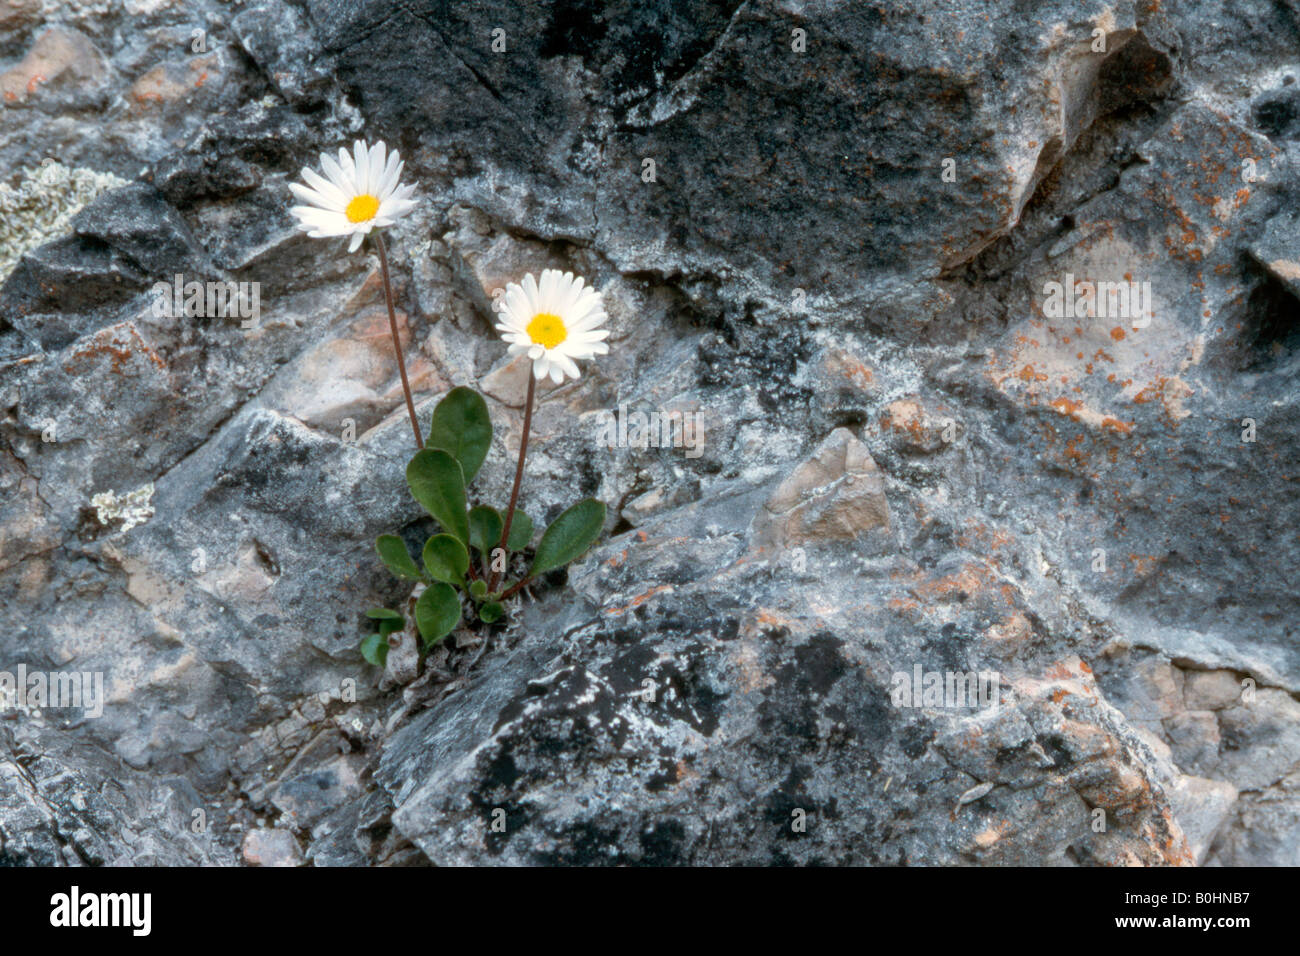 Daisy Star o Daisy delle Alpi (Aster bellidiastrum), Dolomiti di Sesto, Bolzano, Italia, Europa Foto Stock